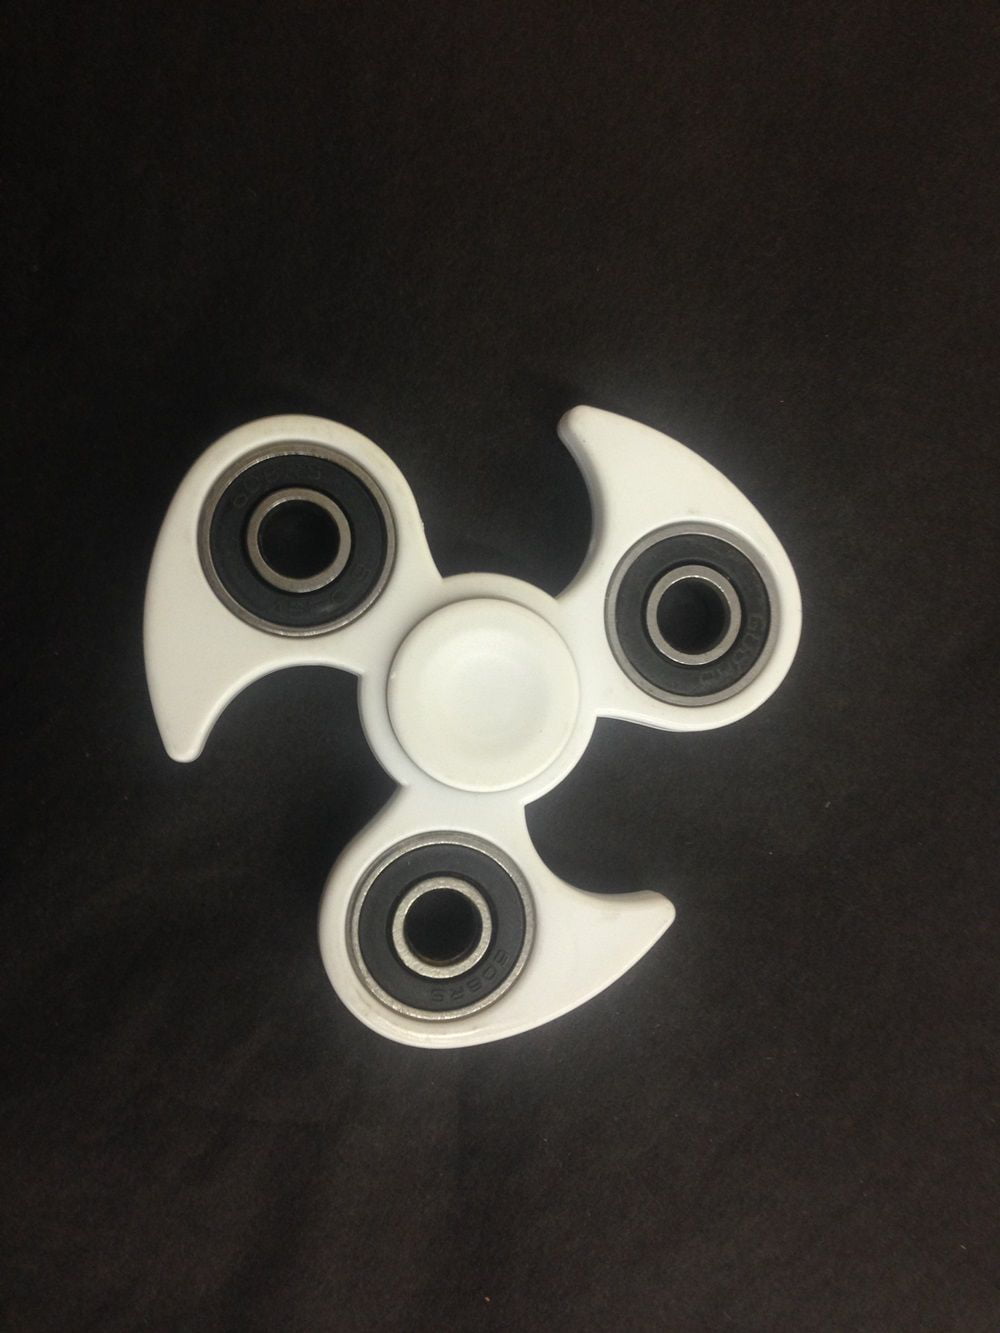 Tri-Spinner Ninja Star Aluminum Black (L) – WizZon